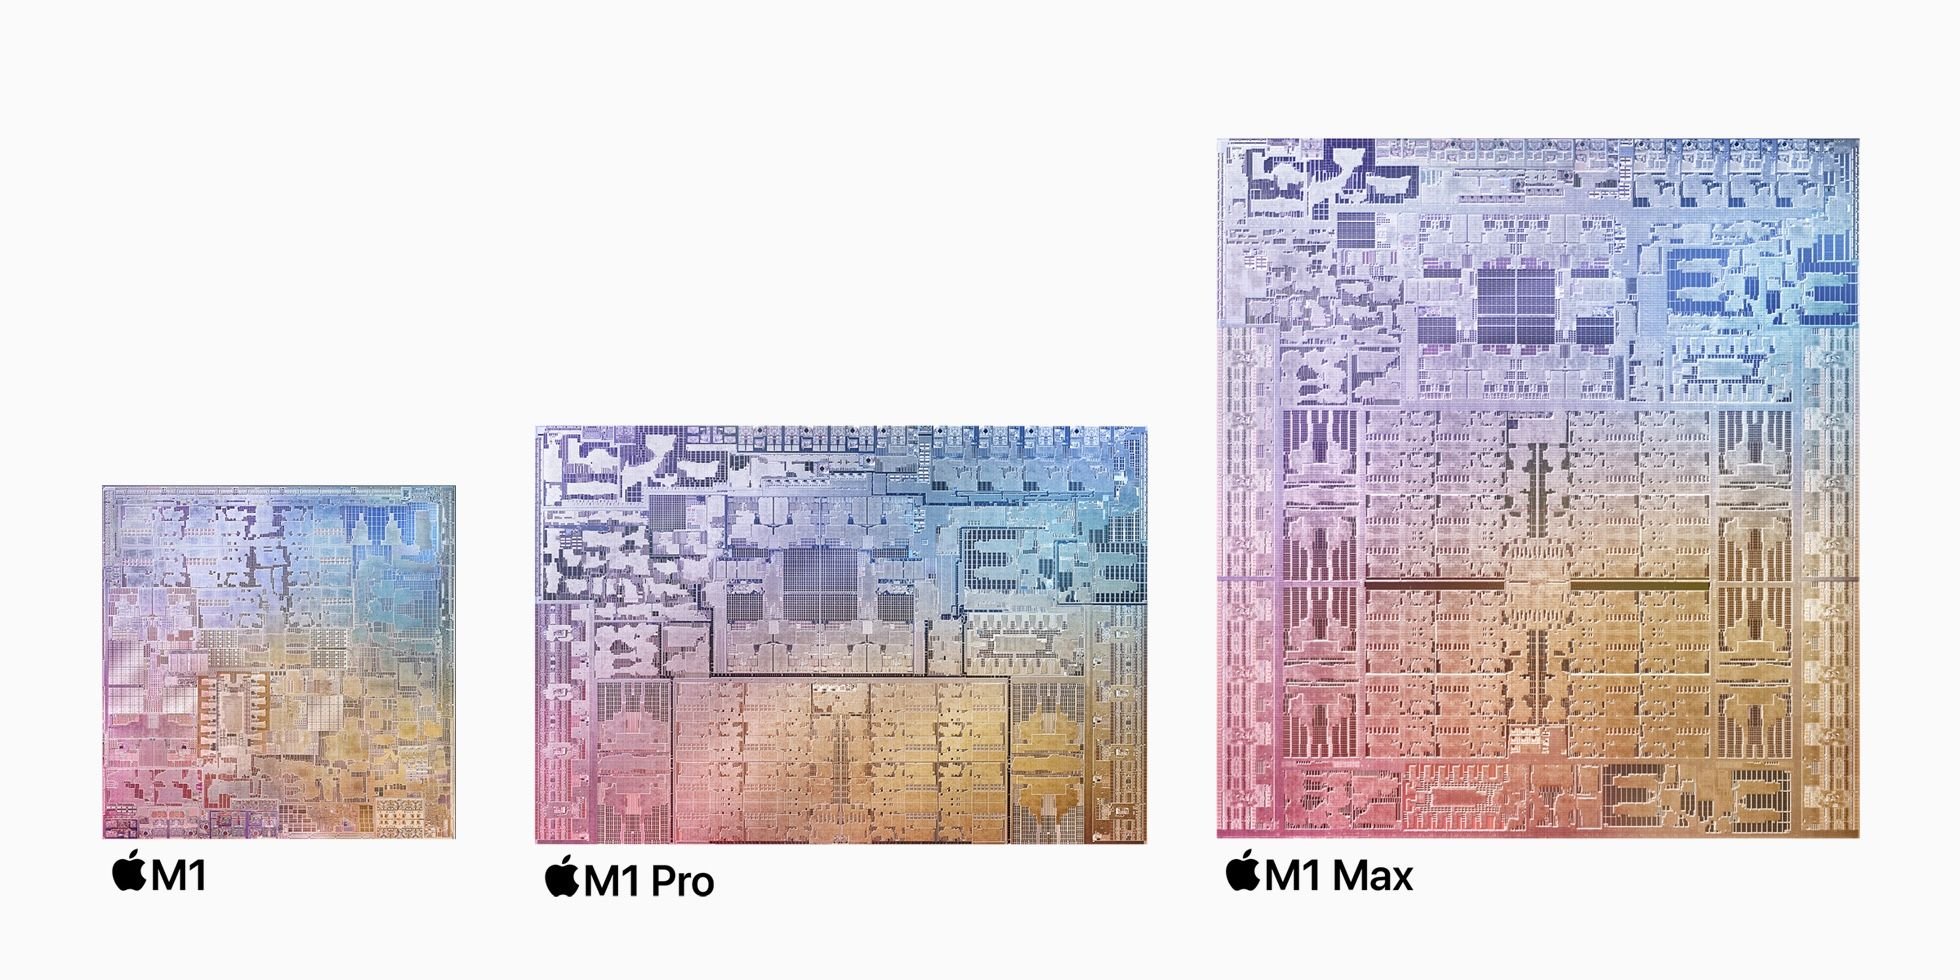 El cerebro detrás de los excelentes chips M1 de Apple ahora se une a Intel